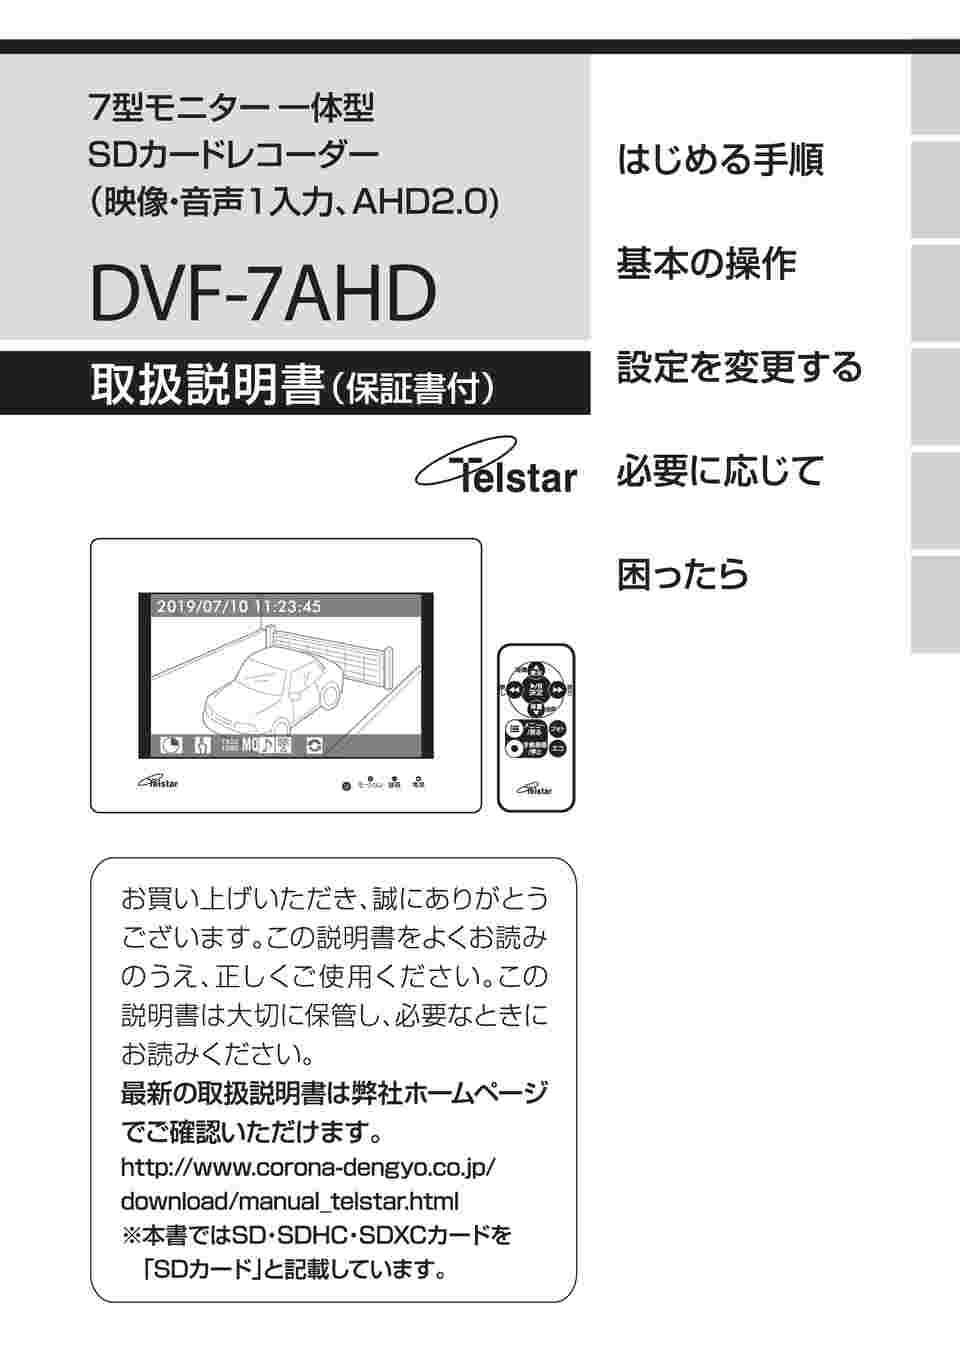 【HOT人気セール】コロナ電業 7型モニター一体型SDカードレコーダー DVF-7AHD ホワイト その他